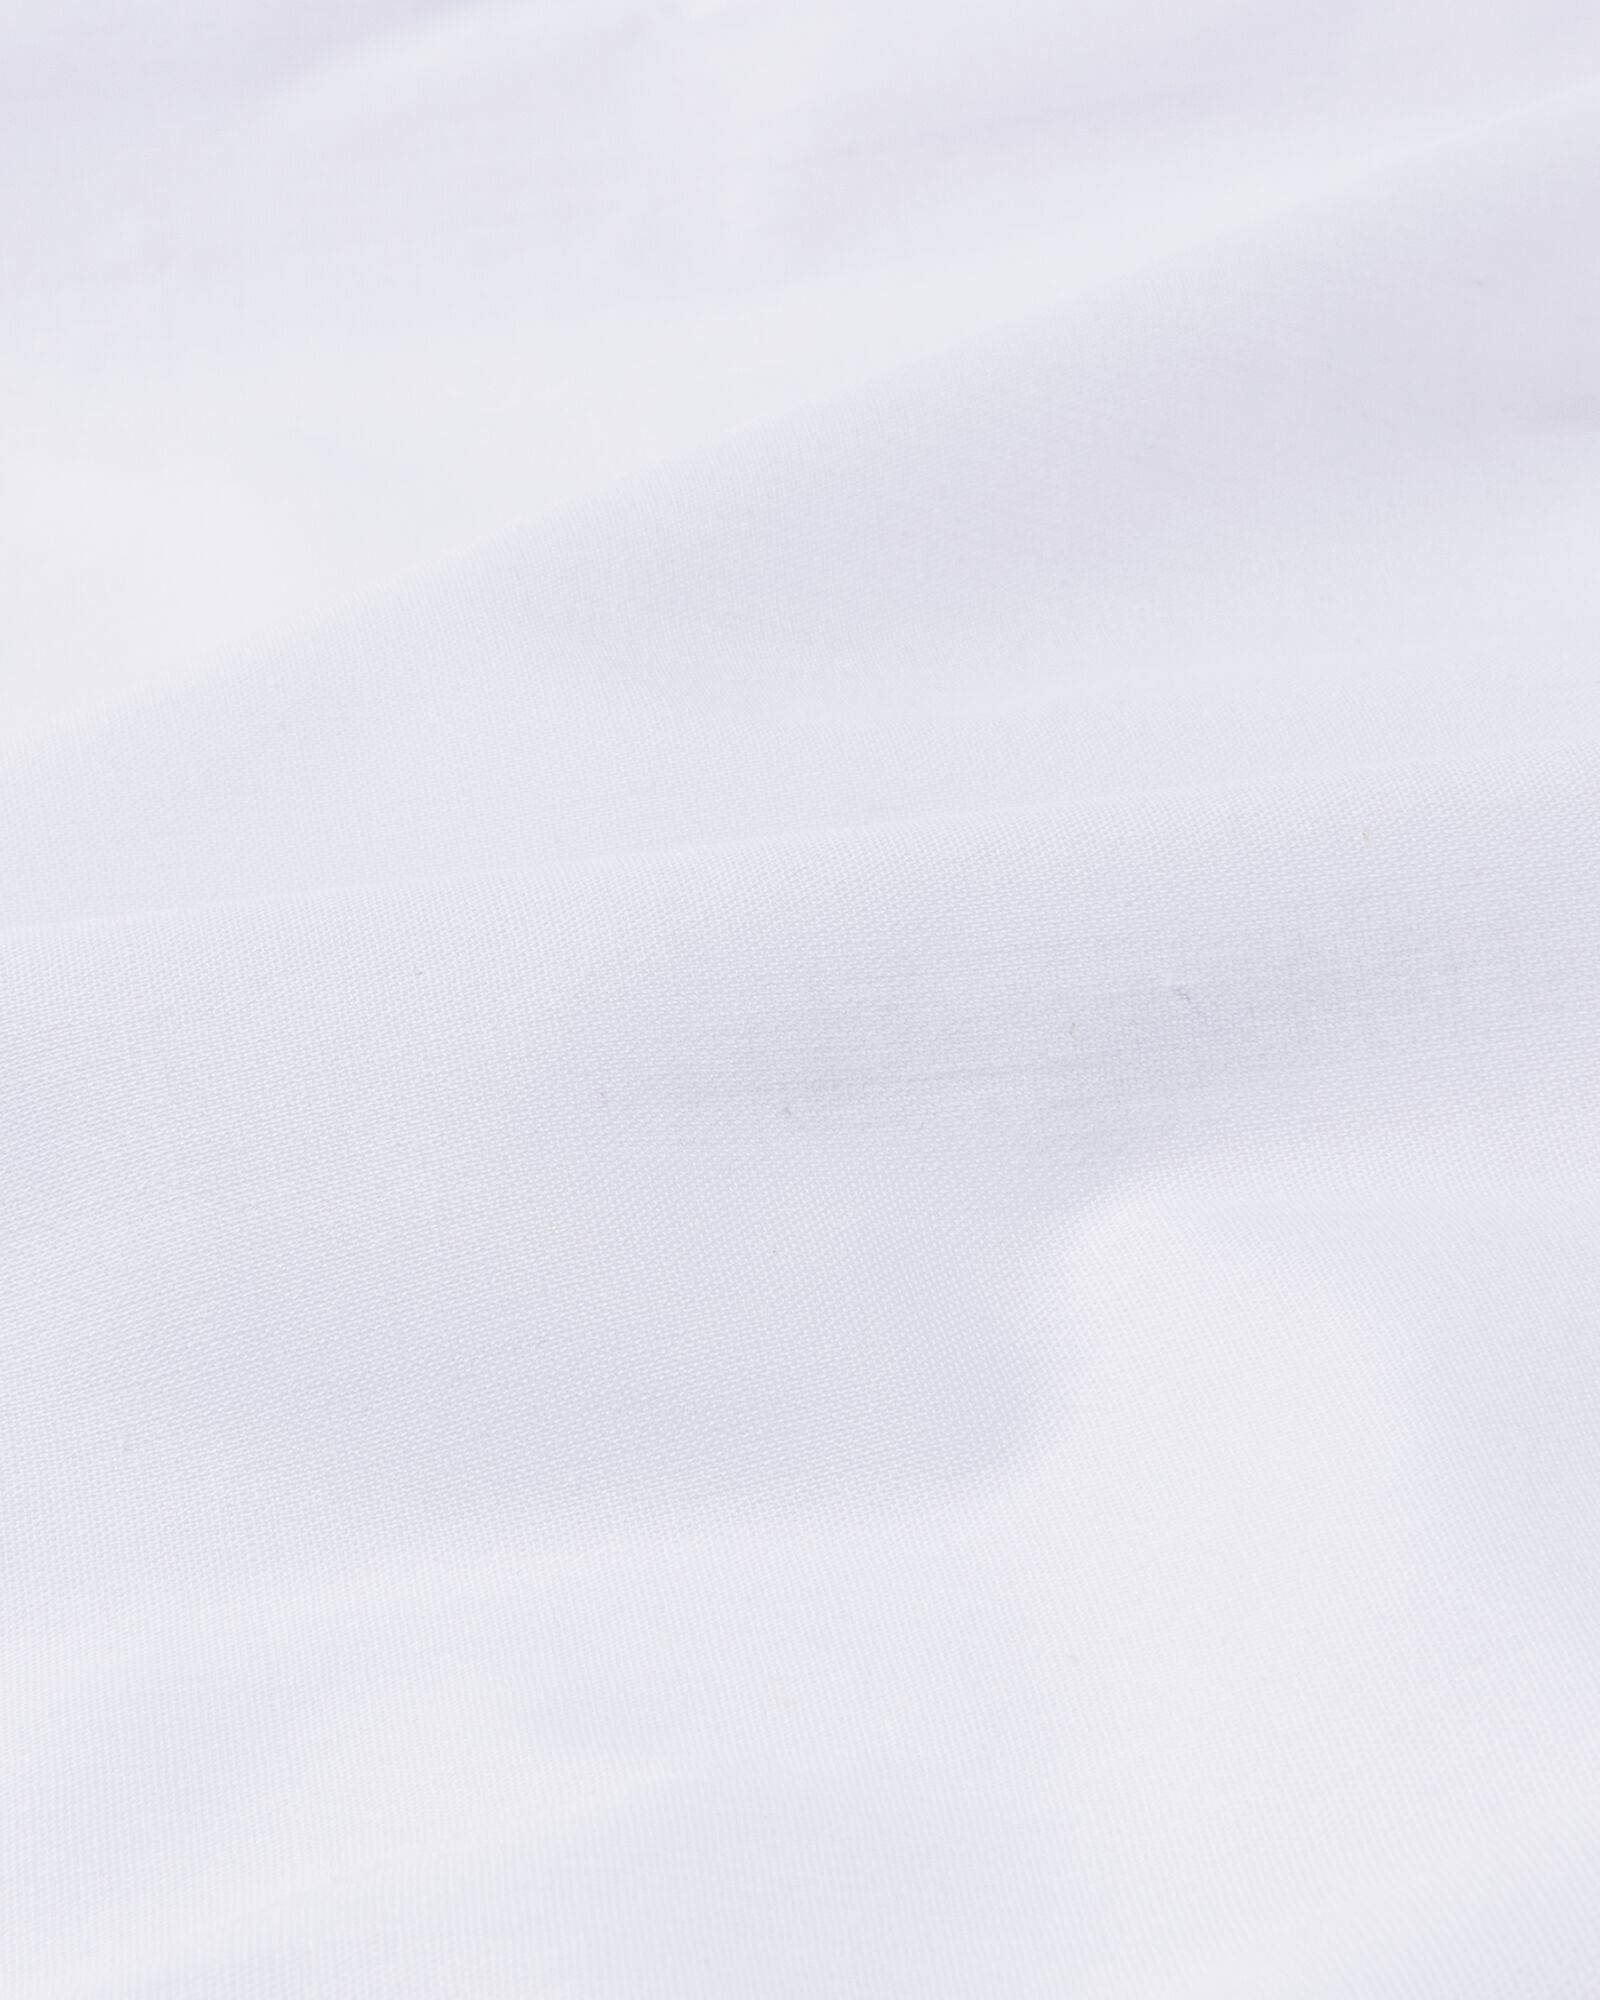 drap-housse coton 160x200 blanc - 5190005 - HEMA